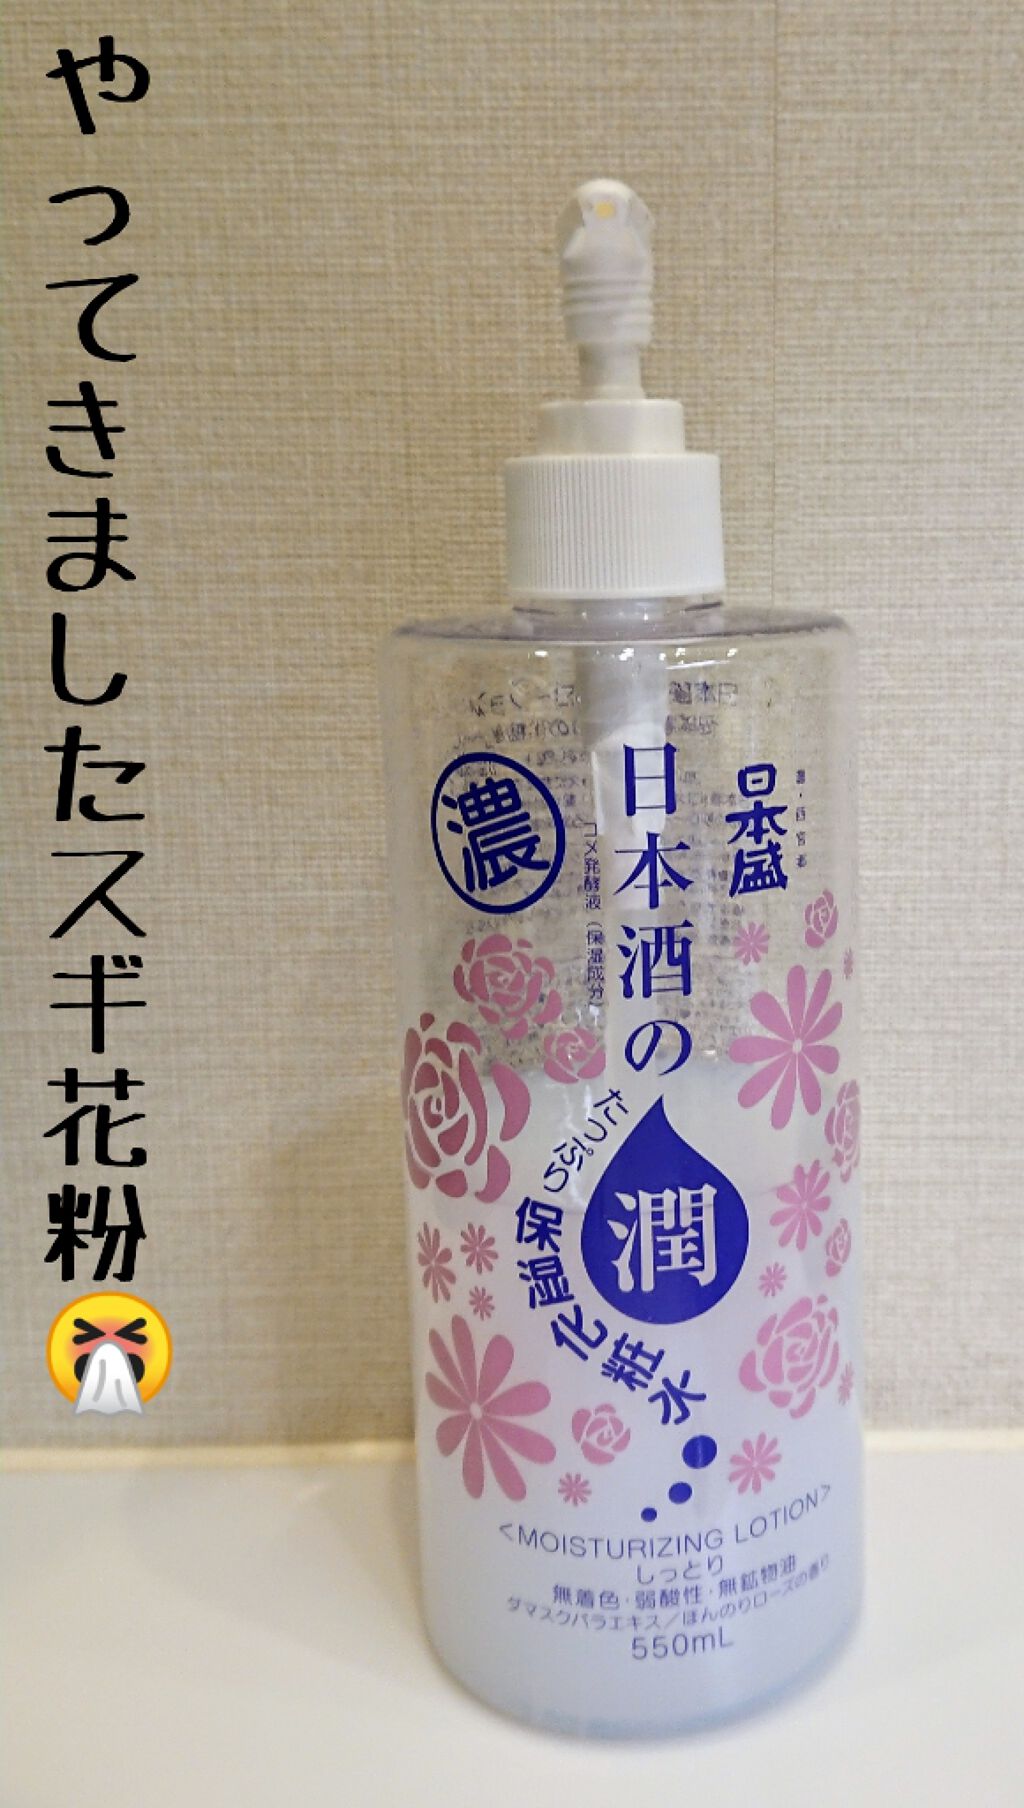 日本酒の保湿化粧水 しっとり 日本盛の効果に関する口コミ やってきましたスギ花粉 私は遺伝による通年 By 優香 低浮上 混合肌 Lips